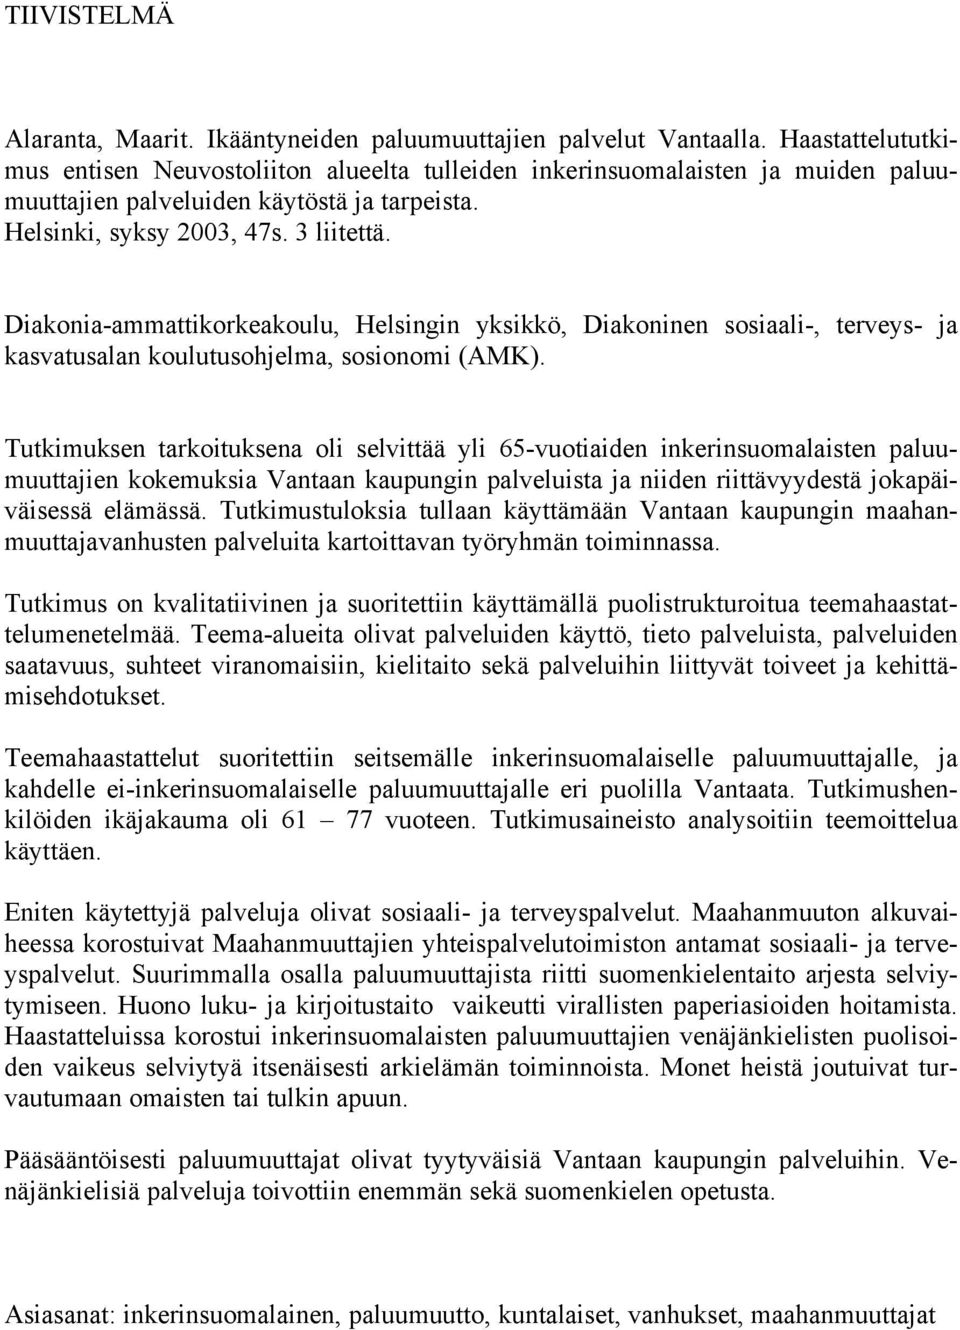 Diakonia-ammattikorkeakoulu, Helsingin yksikkö, Diakoninen sosiaali-, terveys- ja kasvatusalan koulutusohjelma, sosionomi (AMK).